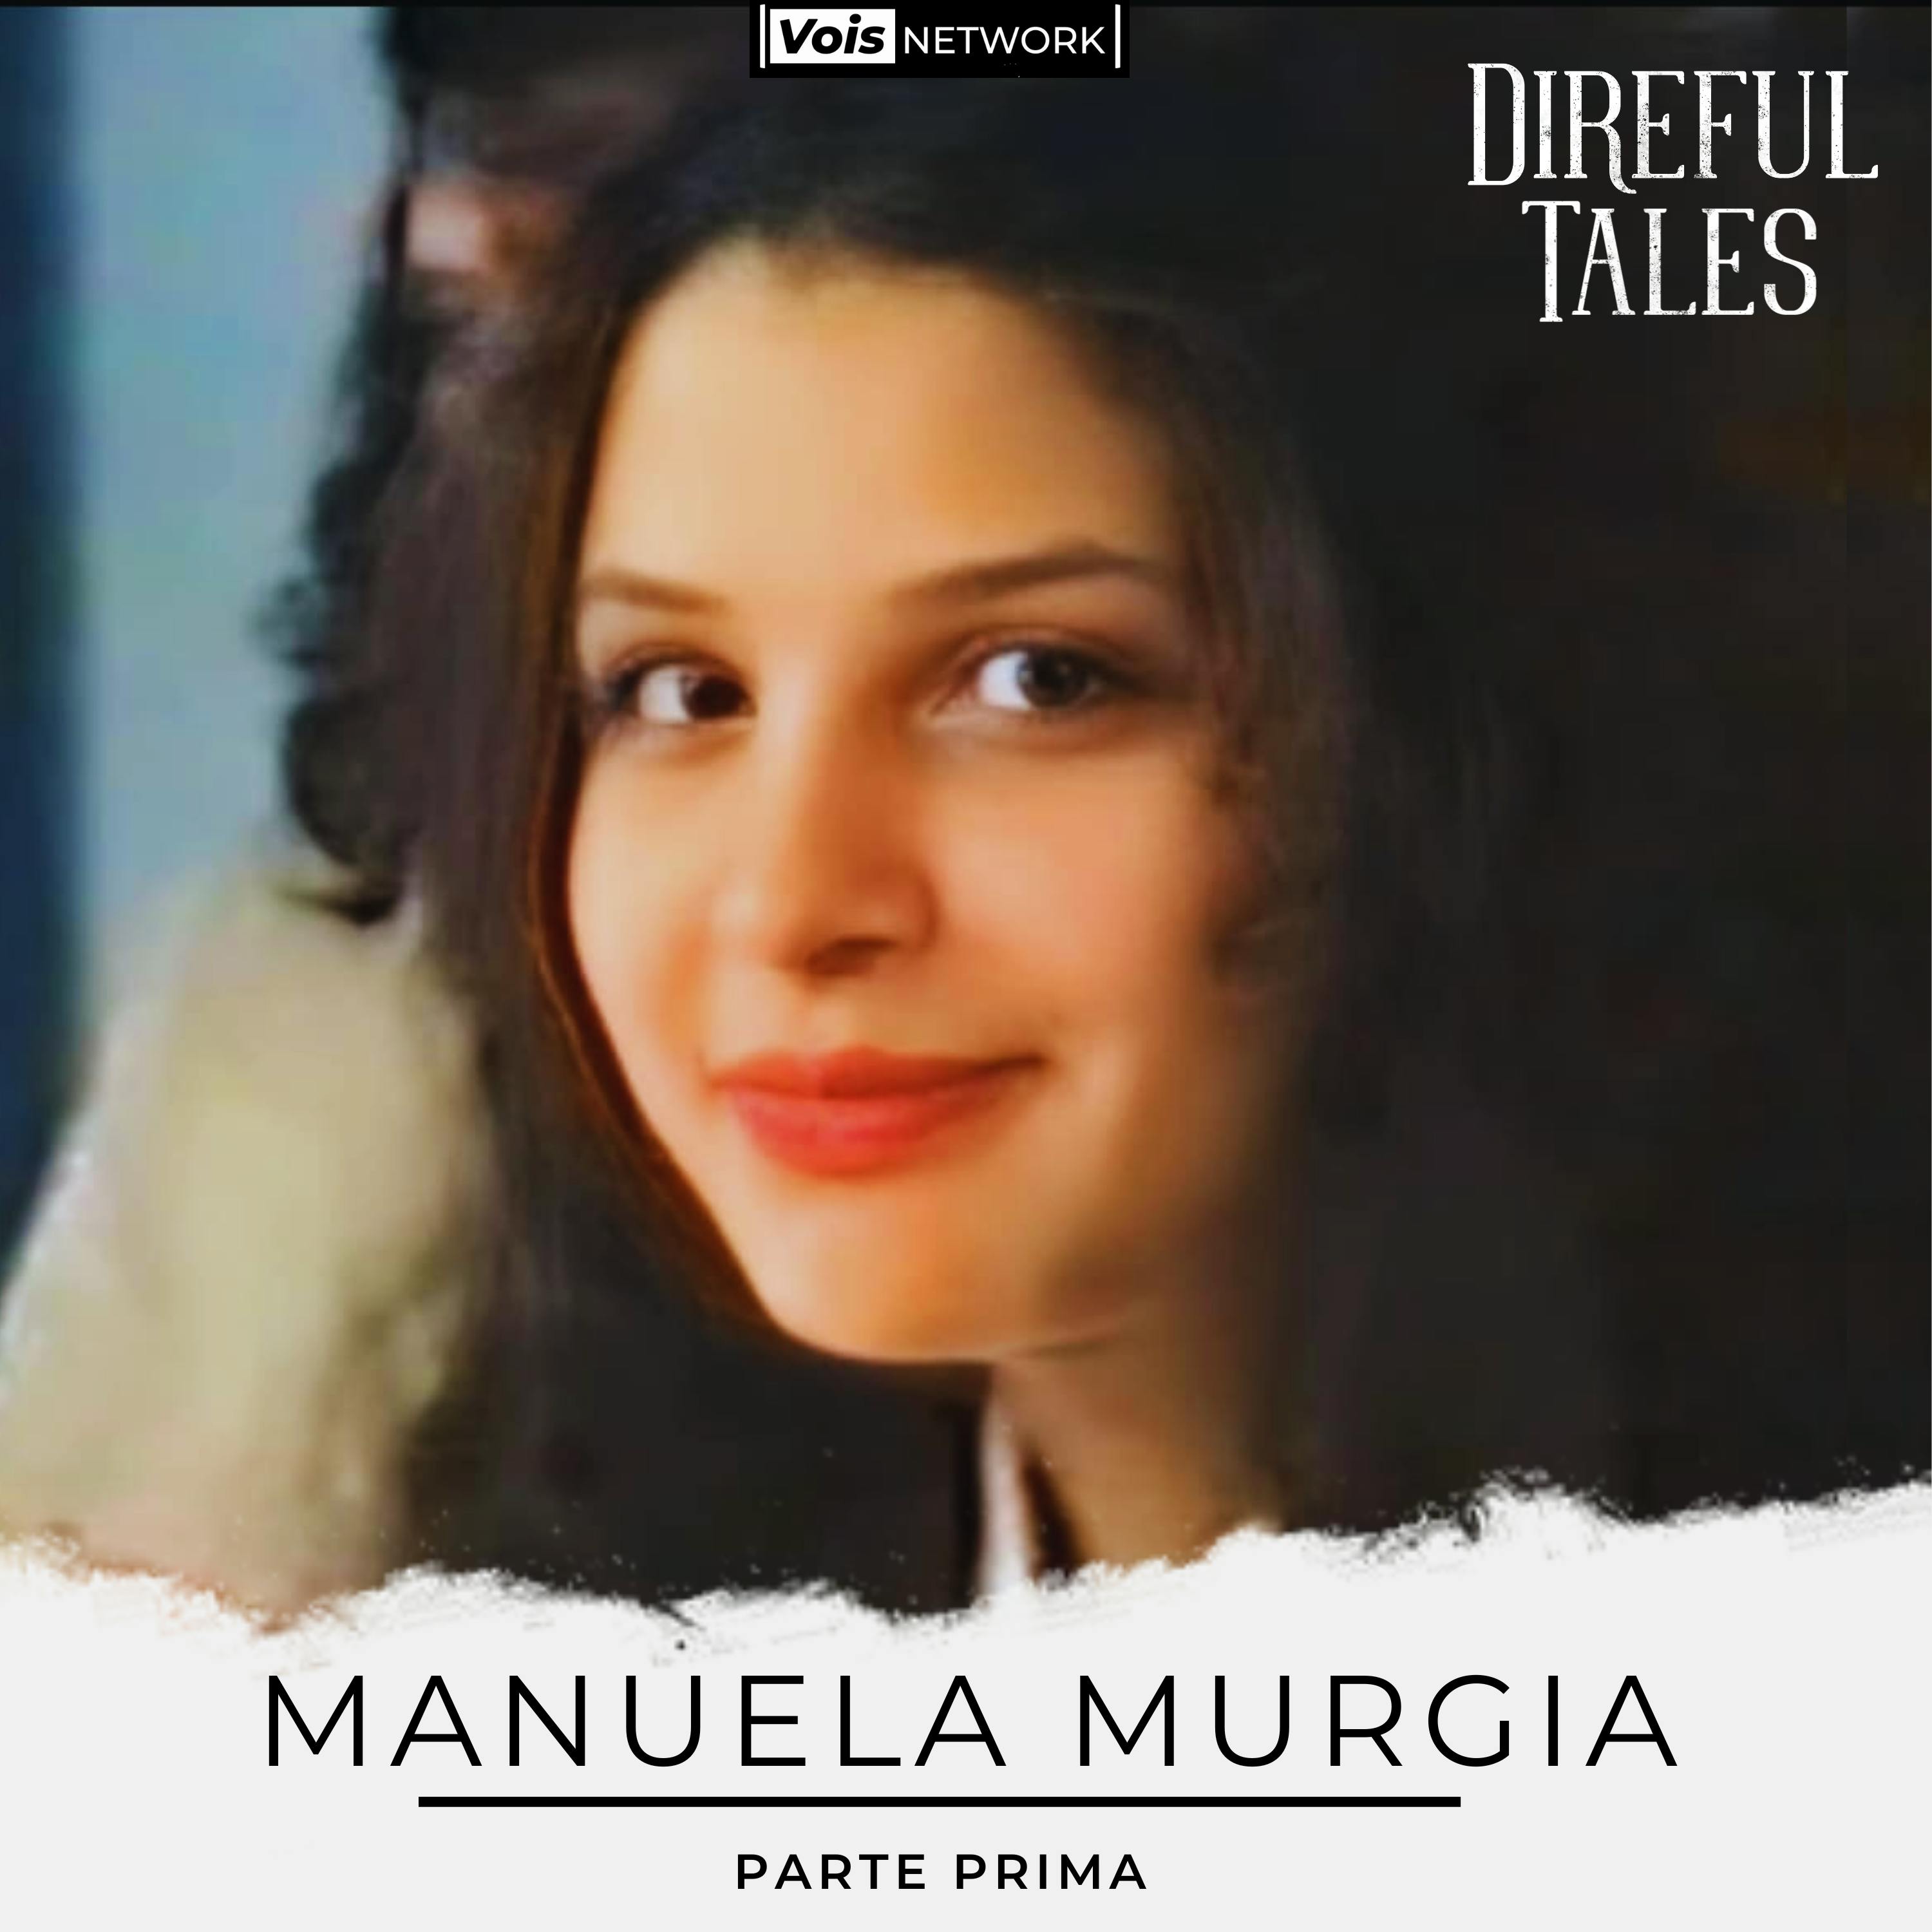 SPECIALE - EP1 - Manuela Murgia, intervista alla famiglia